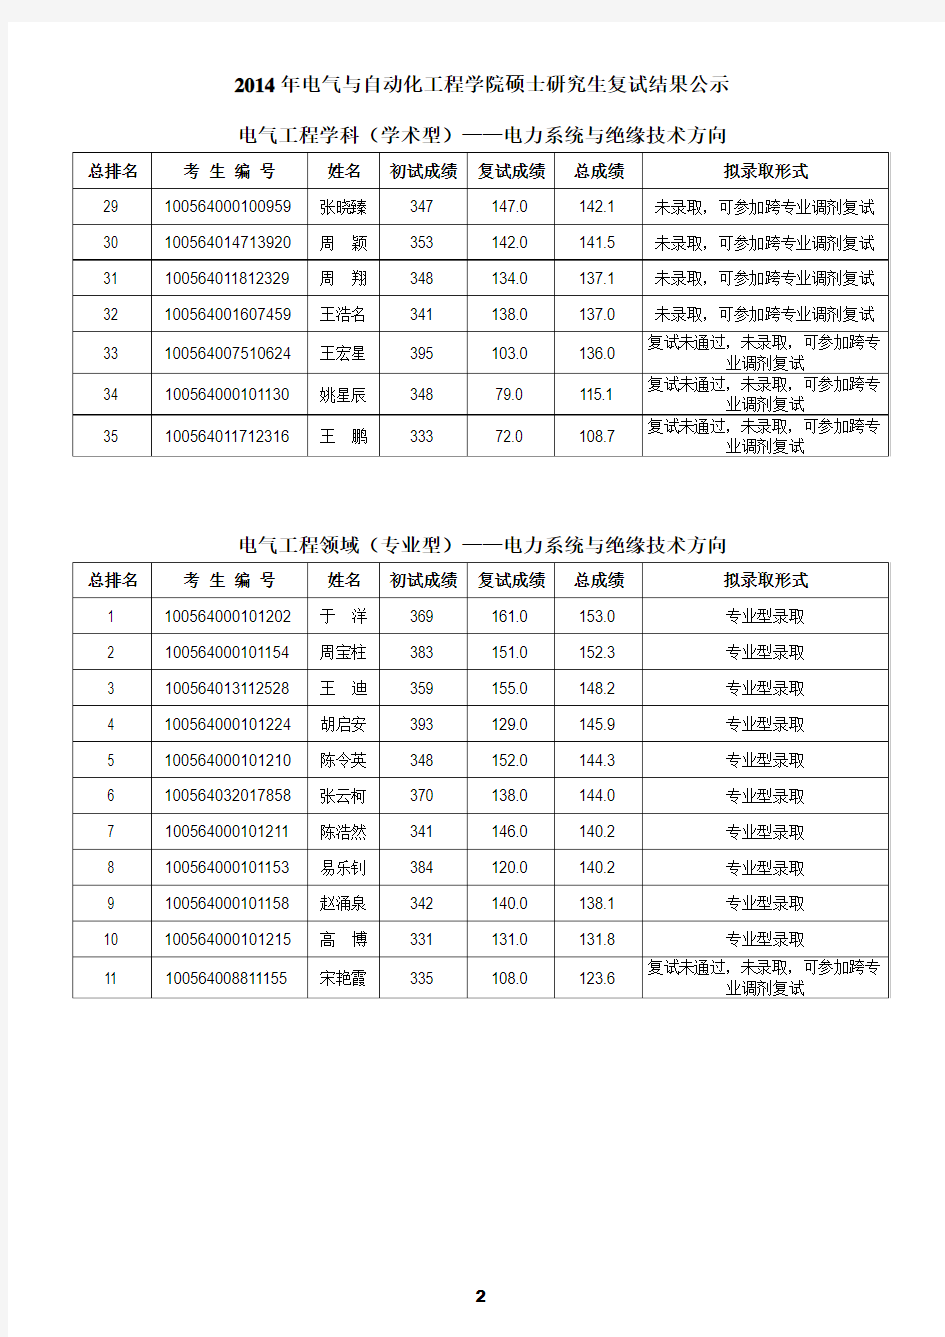 2014天津大学电力系统方向复试结果及录取名单(公示版)